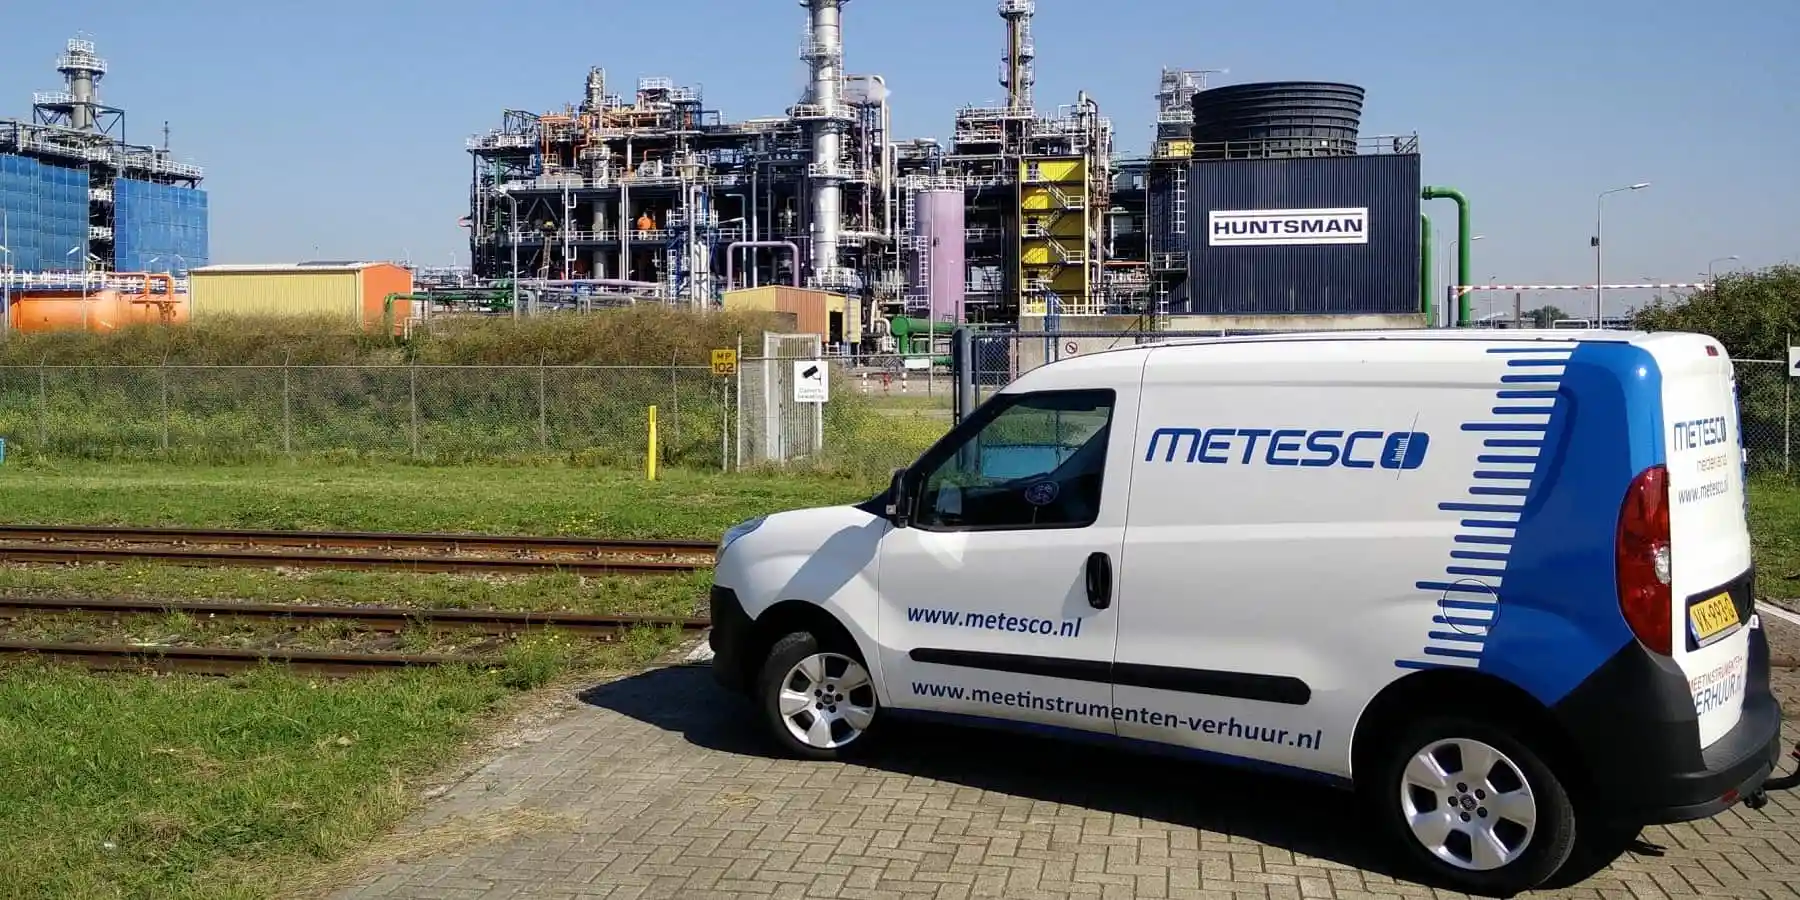 Metesco Nederland